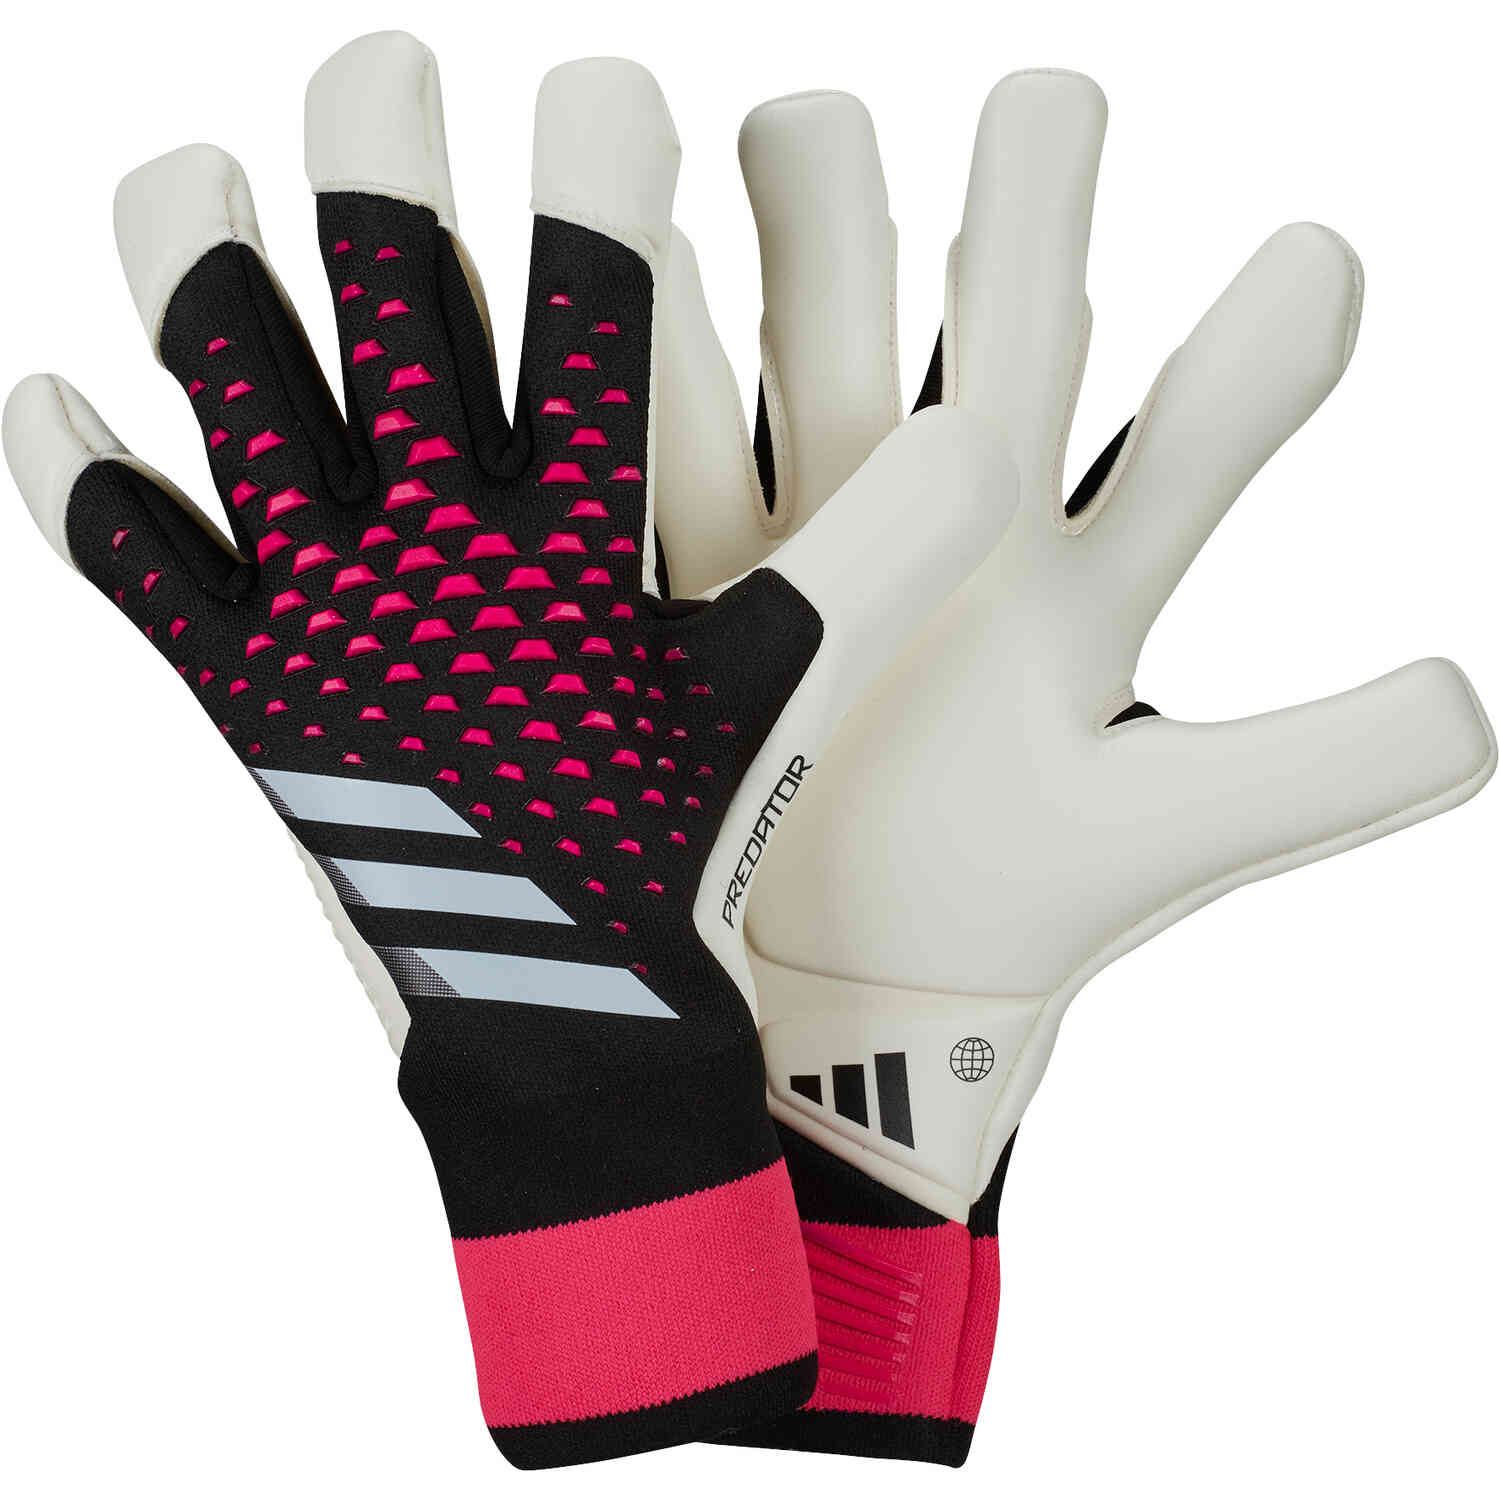 Ambassade Omleiding koper adidas Predator Pro Hybrid Goalkeeper Gloves - Own Your Football Pack -  SoccerPro